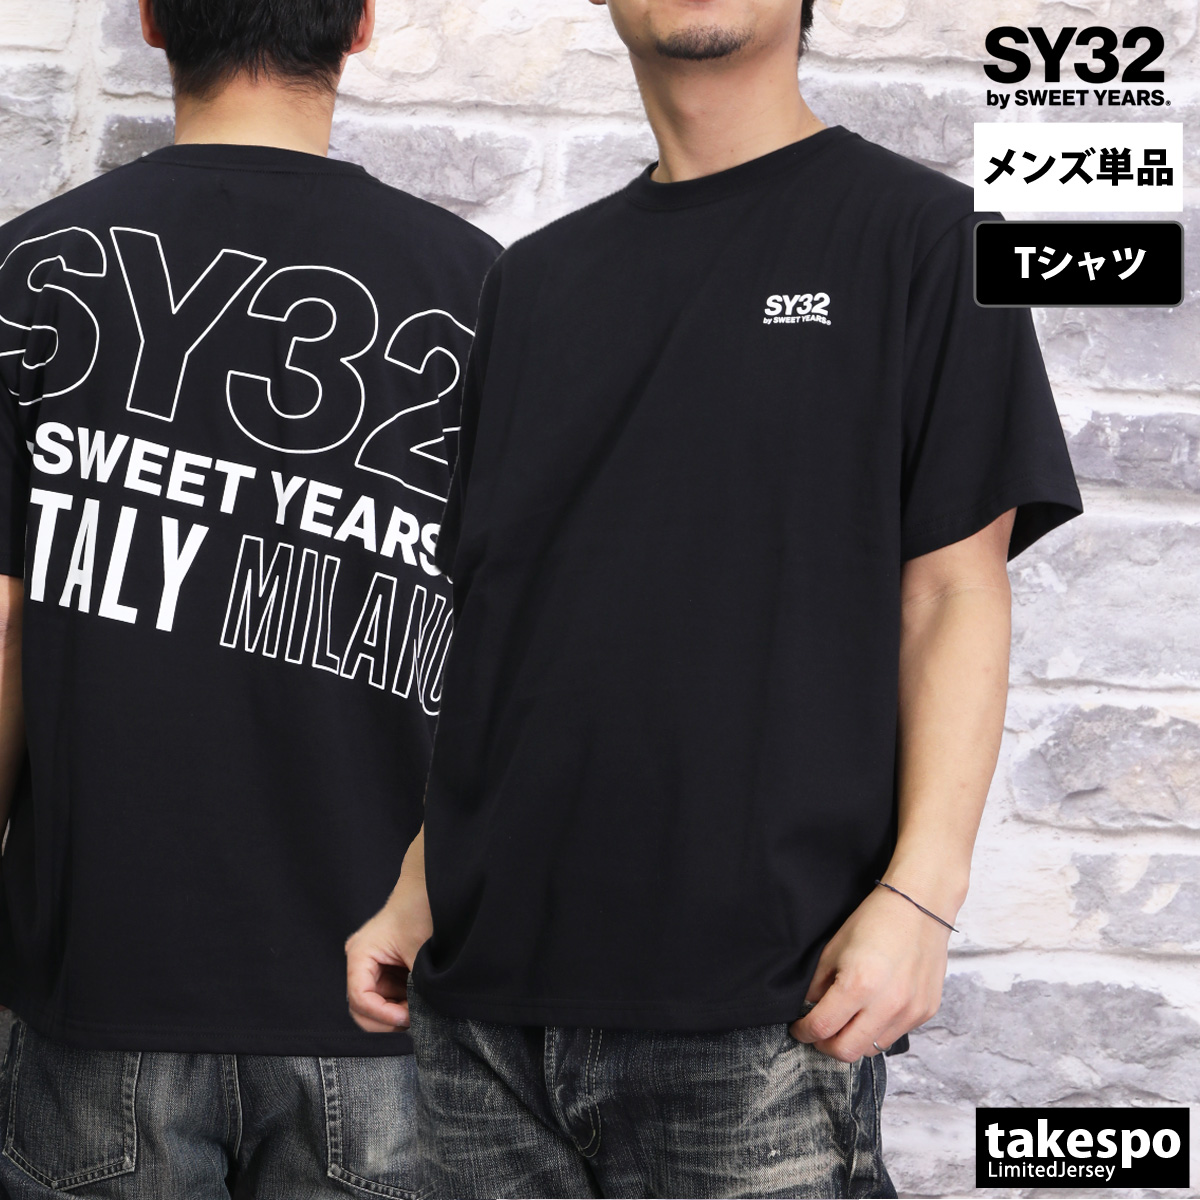 スウィートイヤーズ Tシャツ メンズ 上 SY32 by SWEET YEARS バックプリント付き...